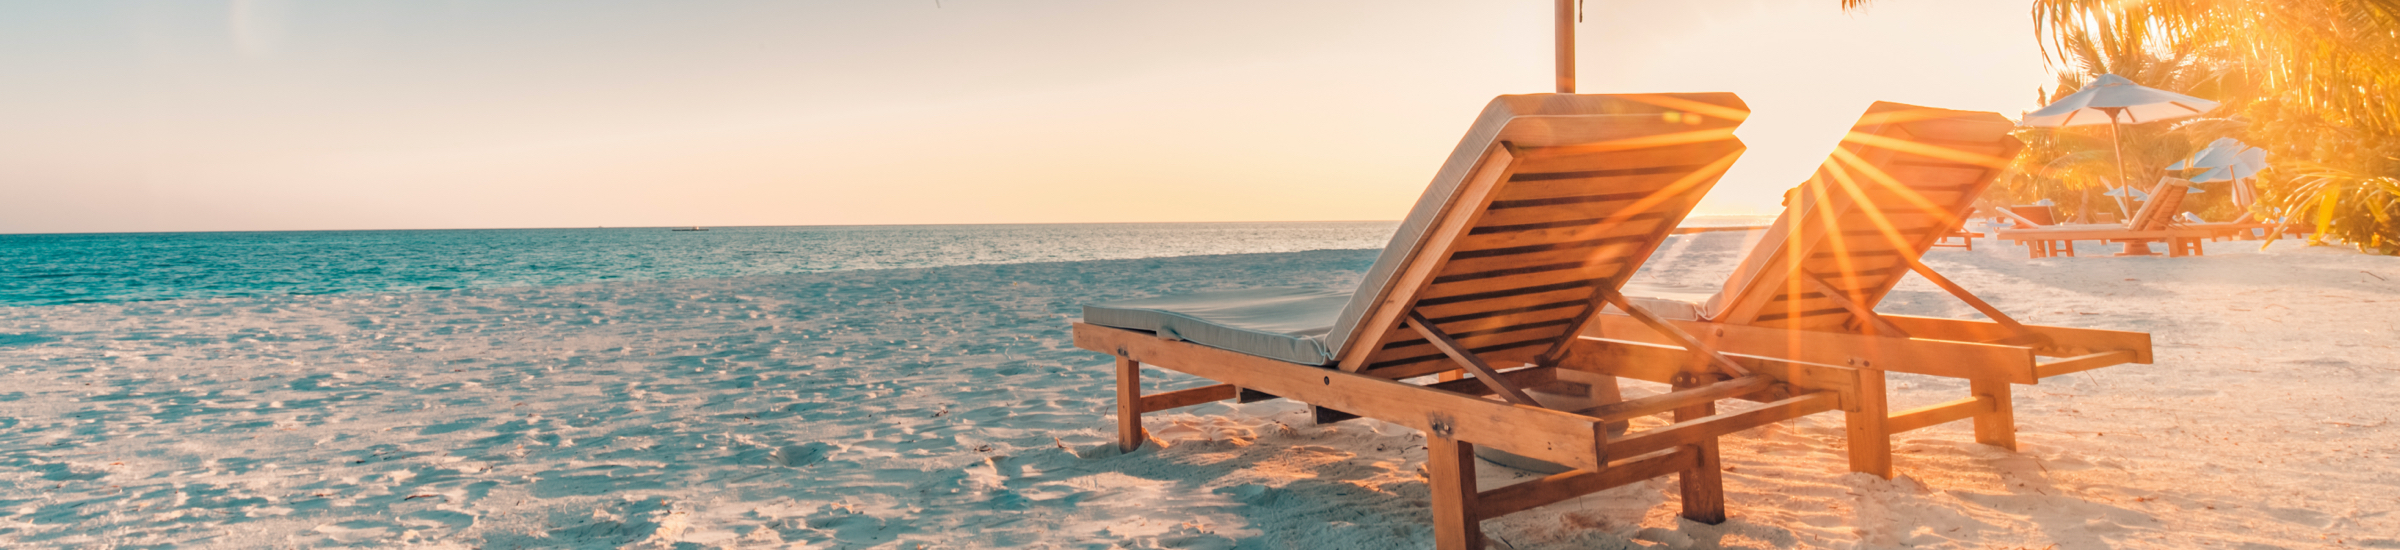 Liegestühle mit Sonnenschirm am Strand